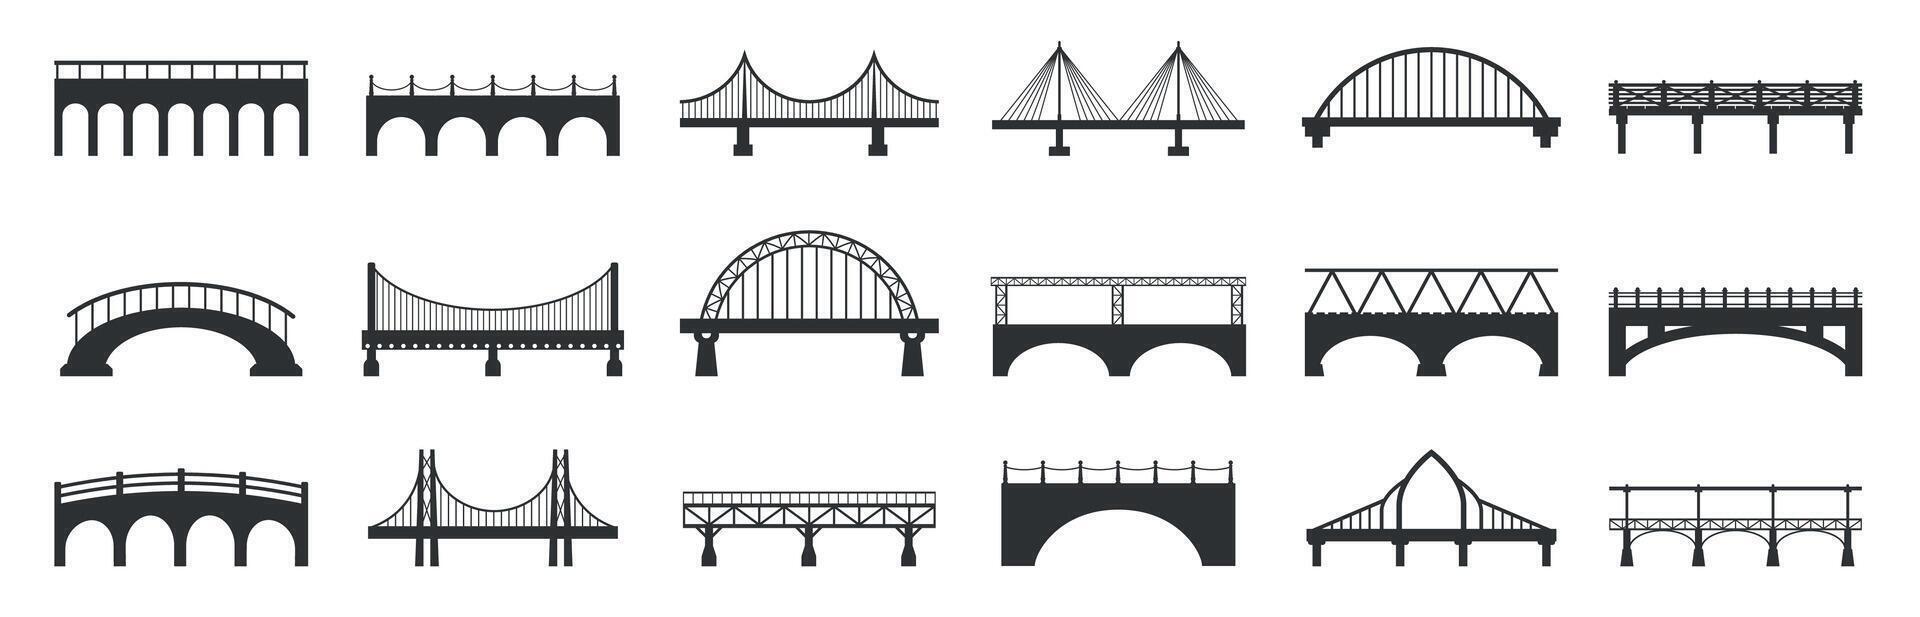 Brücke Silhouette. abstrakt Steg Konstruktionen mit Stein Metall Träger, industriell städtisch die Architektur Gebäude schwarz Symbole. Vektor isoliert einstellen